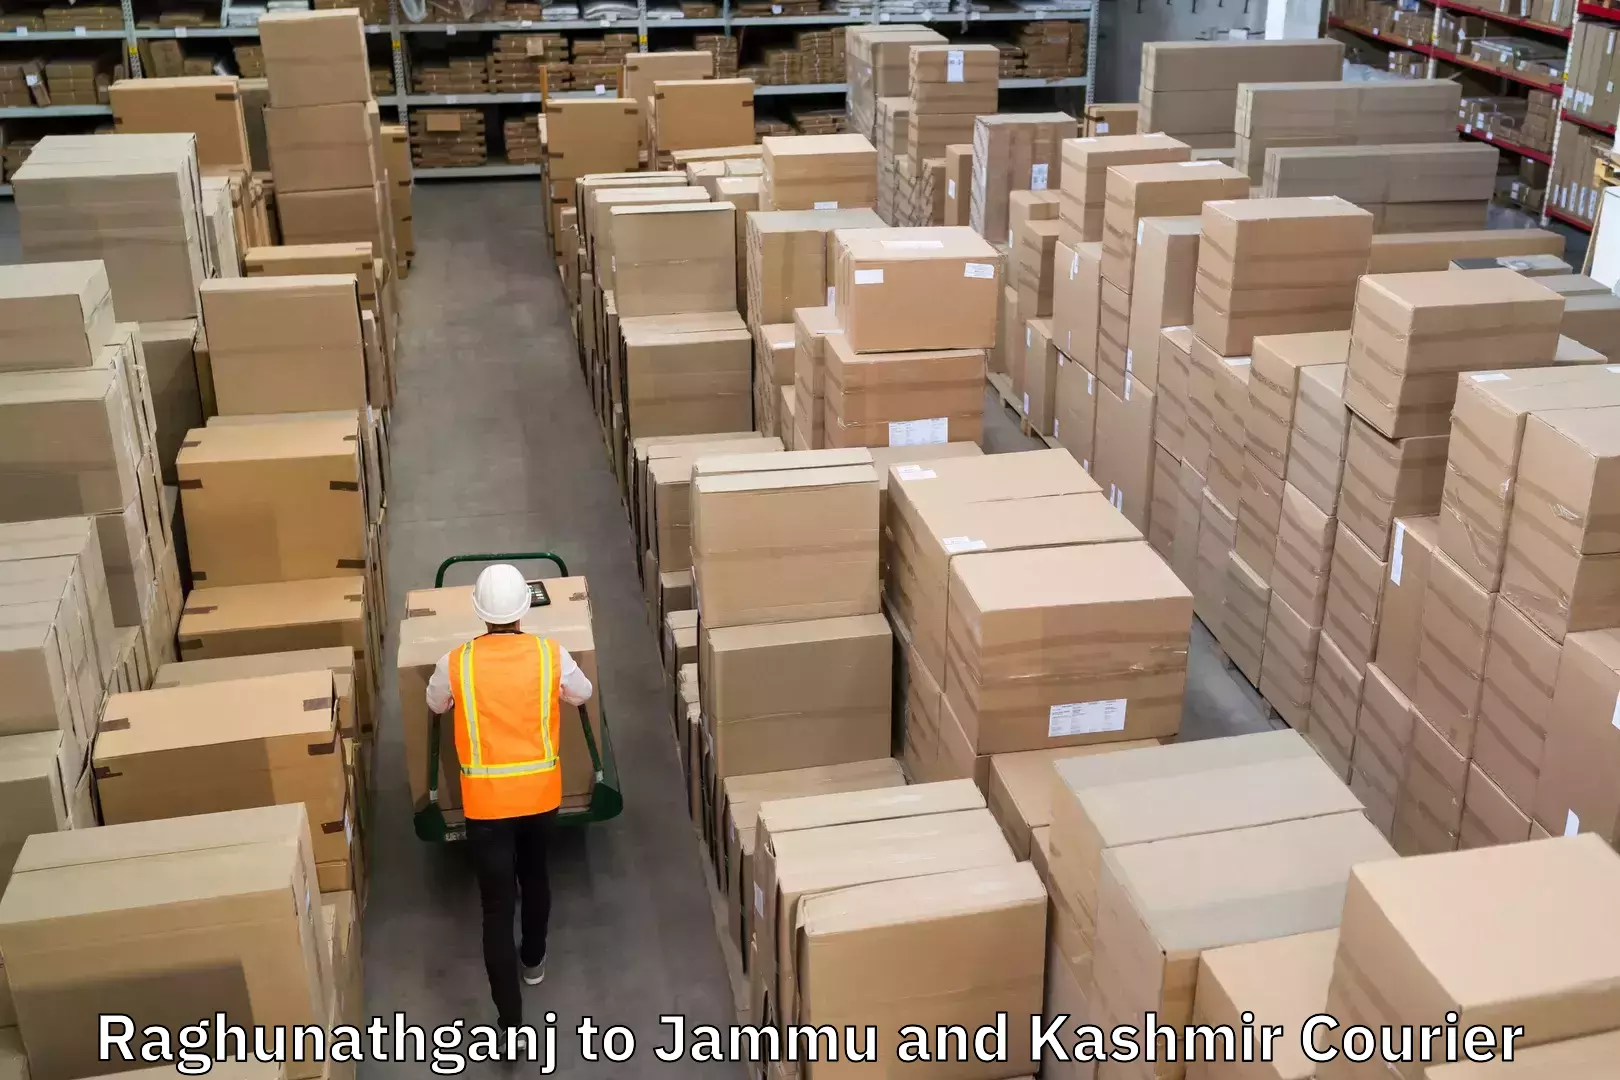 Shipping and handling Raghunathganj to Jammu and Kashmir